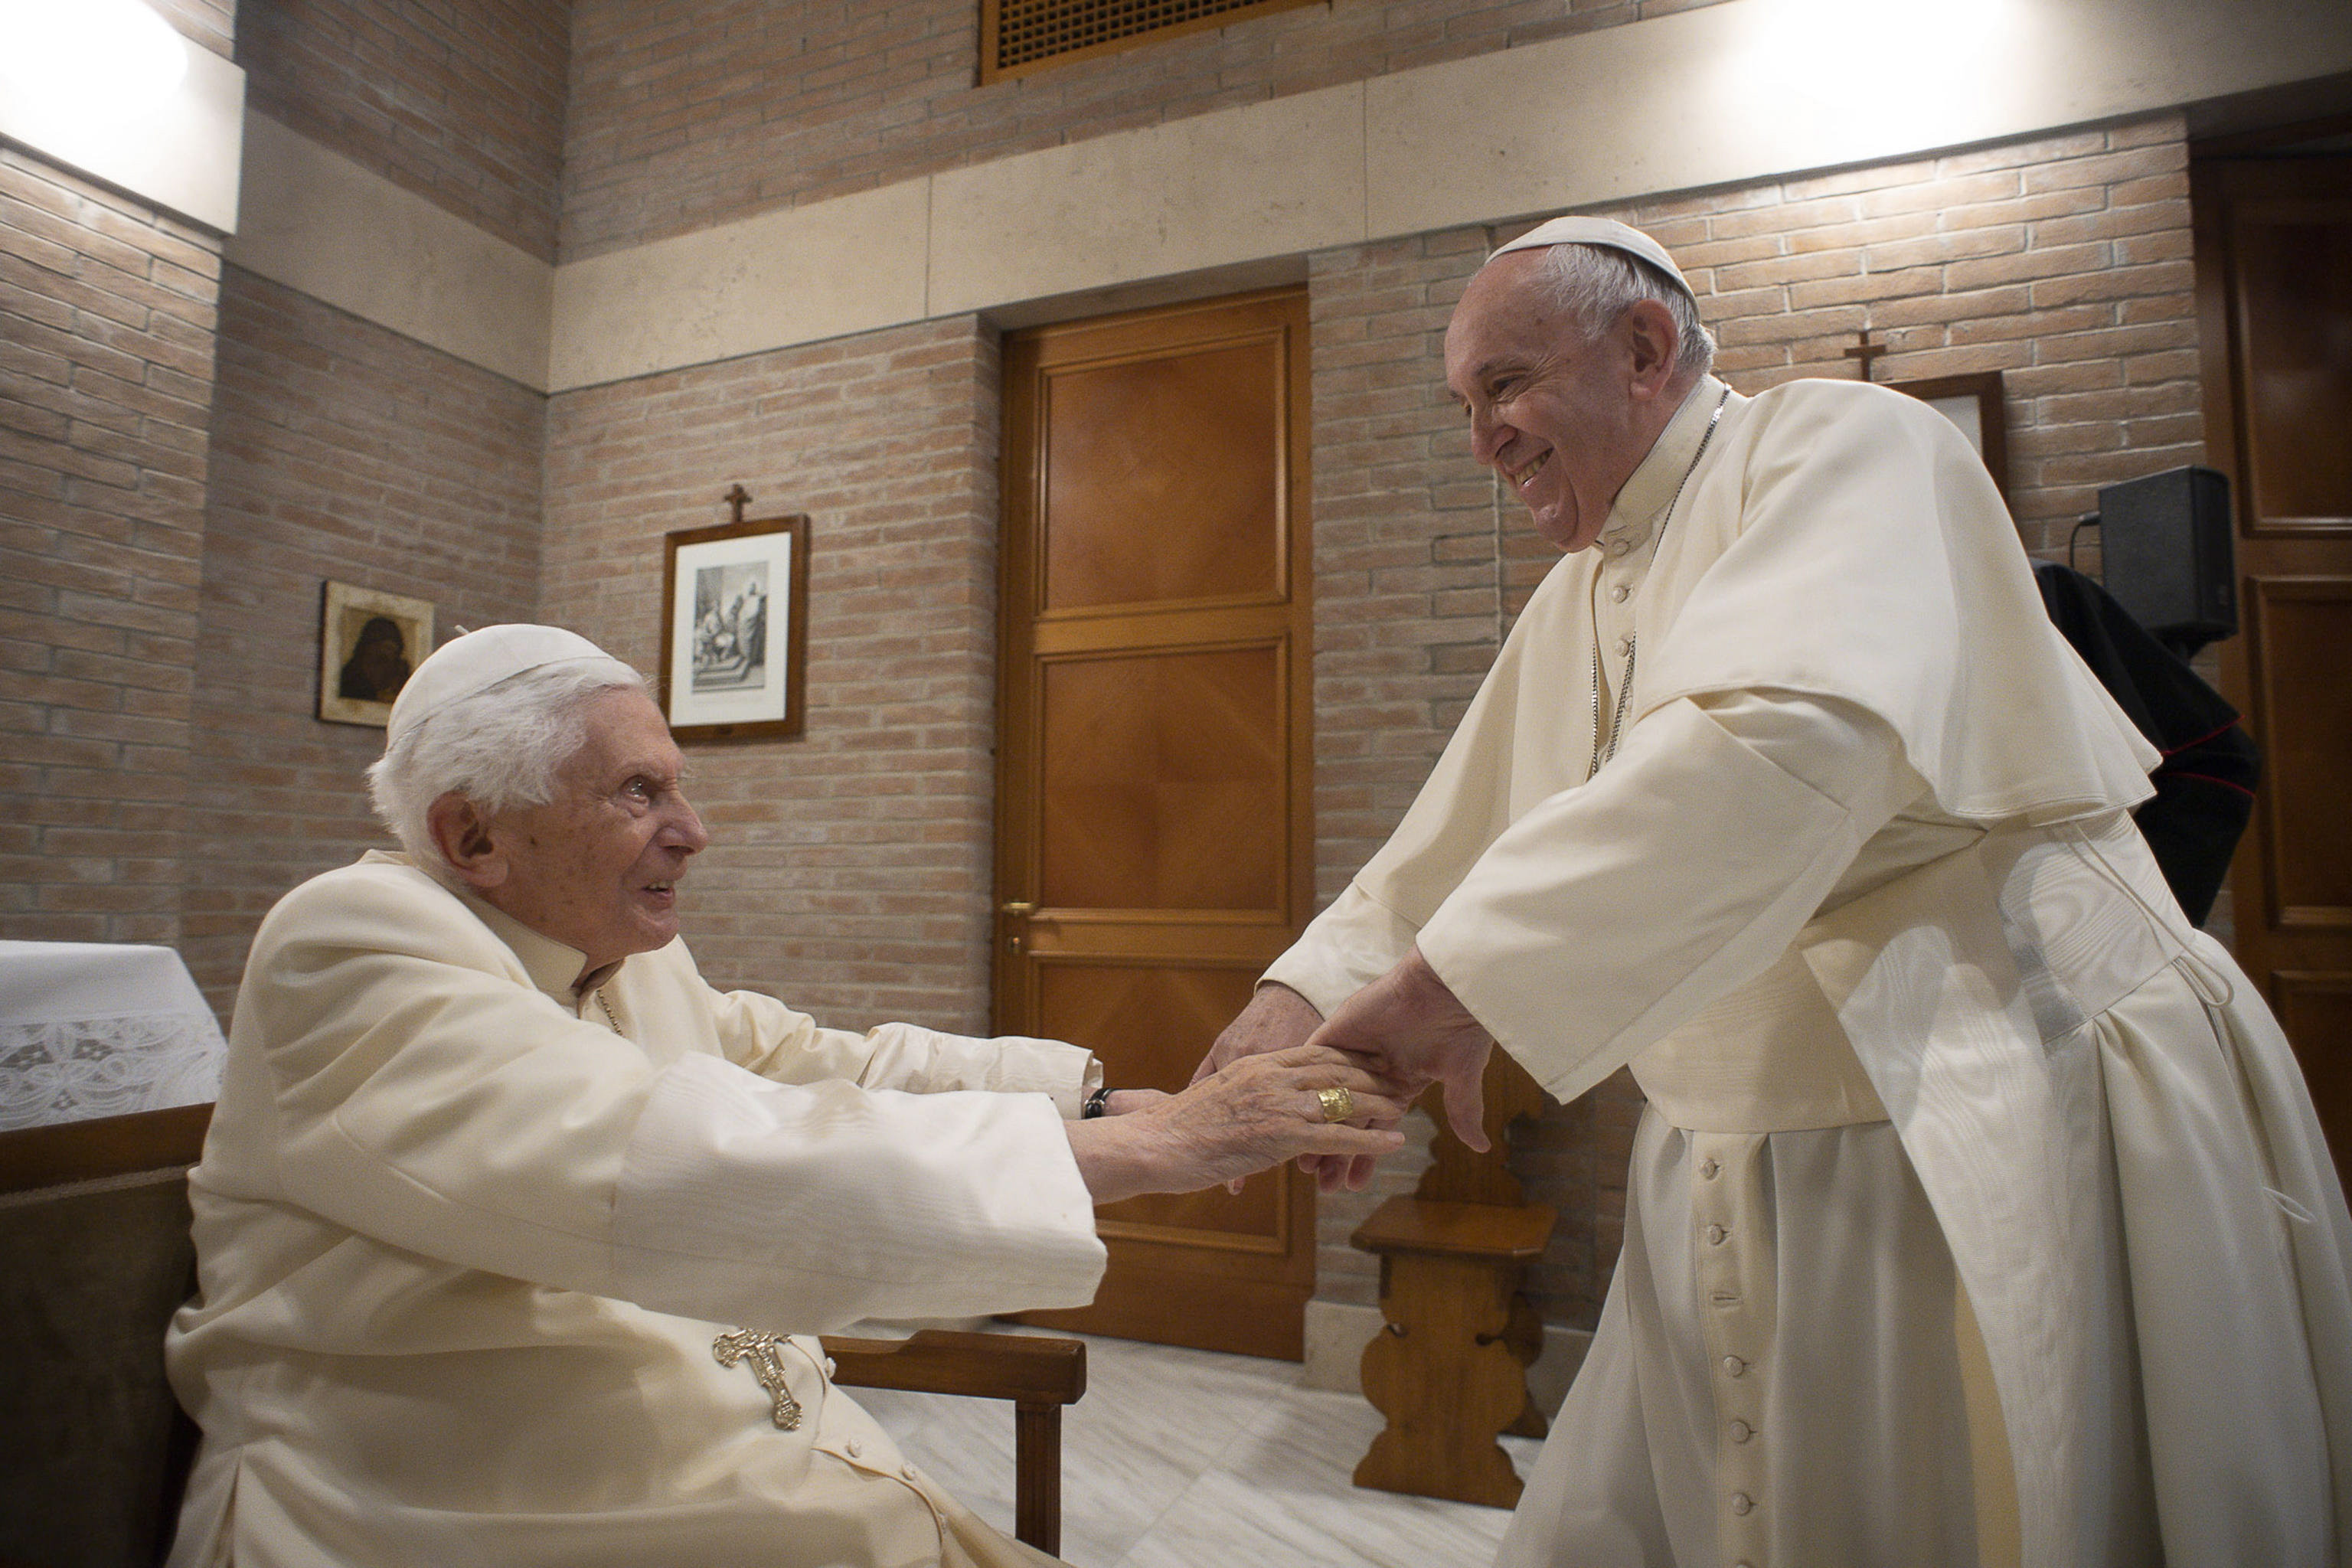 Megszólalt a Vatikán: nem áldják meg a melegházasságot - Blikk